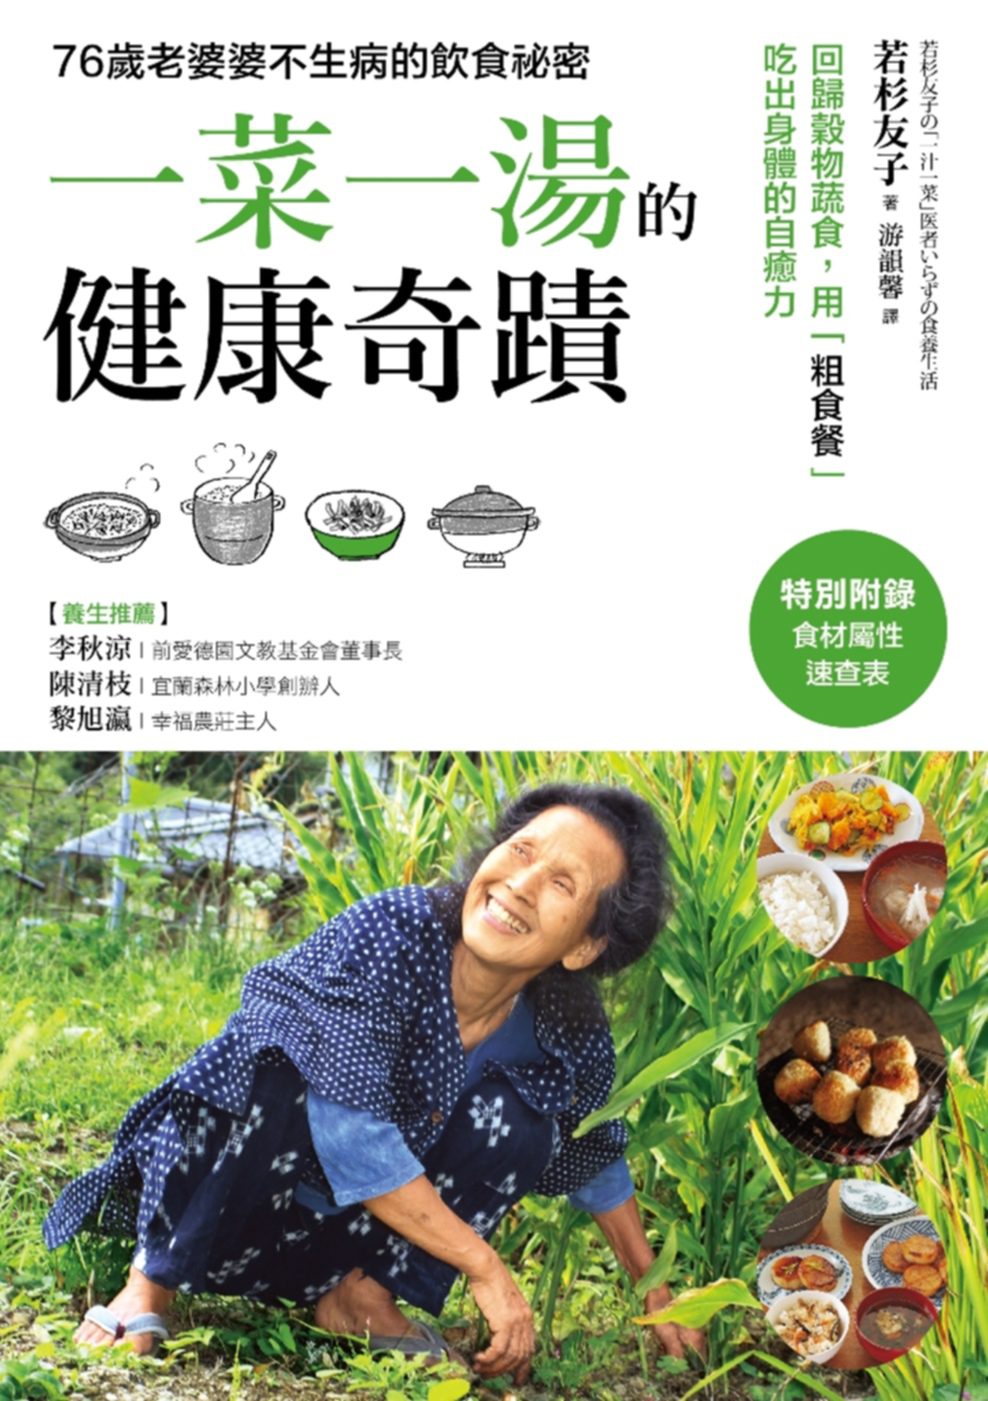 「一菜一湯」的健康奇蹟：吃出驚人自癒力！日本食養專家50年不生病的飲食祕訣，過敏、便祕、不孕症、慢性病、手腳冰冷，通通改善！